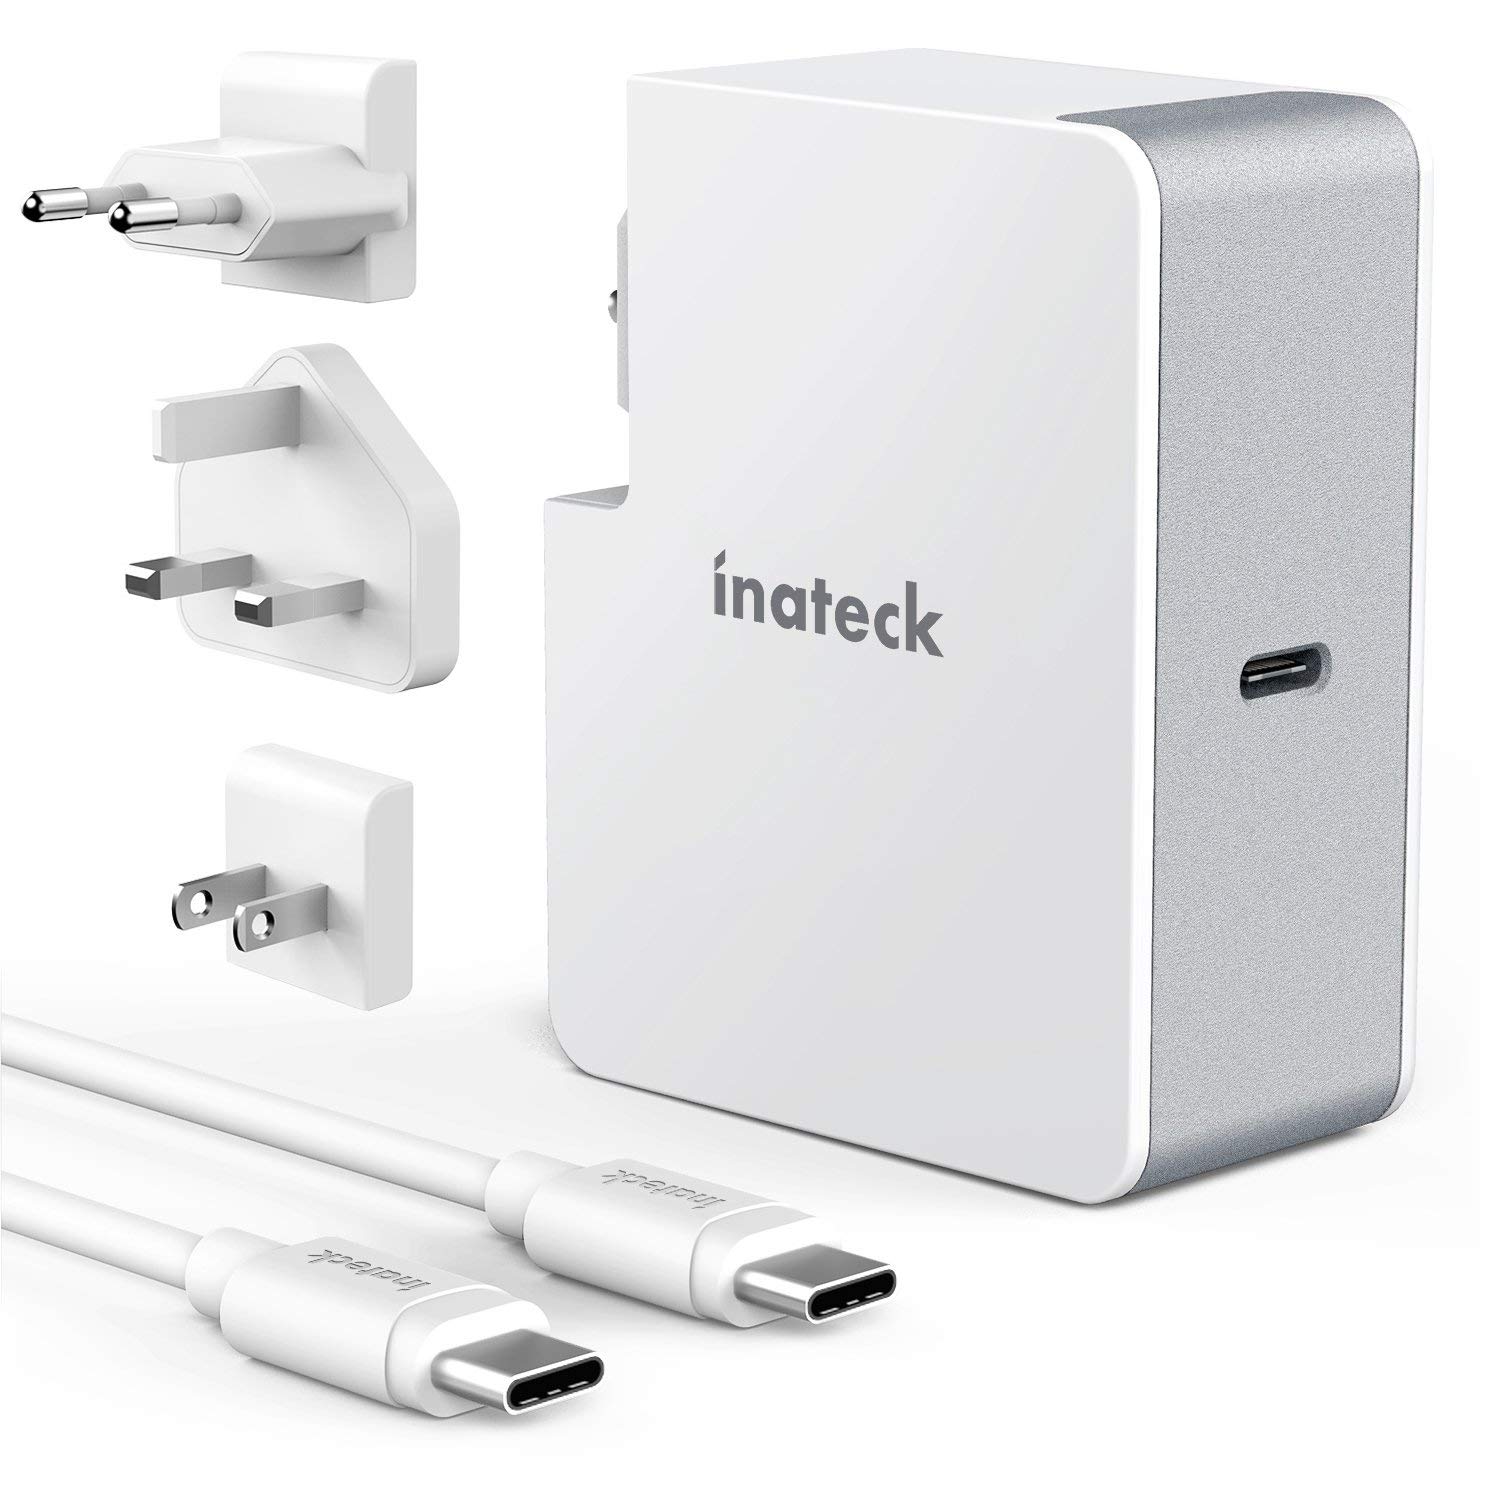 Inateck 45W USB C Ladegerät mit 2 m USB C Kabel, Power Delivery Type C Netzteil für Laptop und viele Weitere USB C Geräte, Weiß